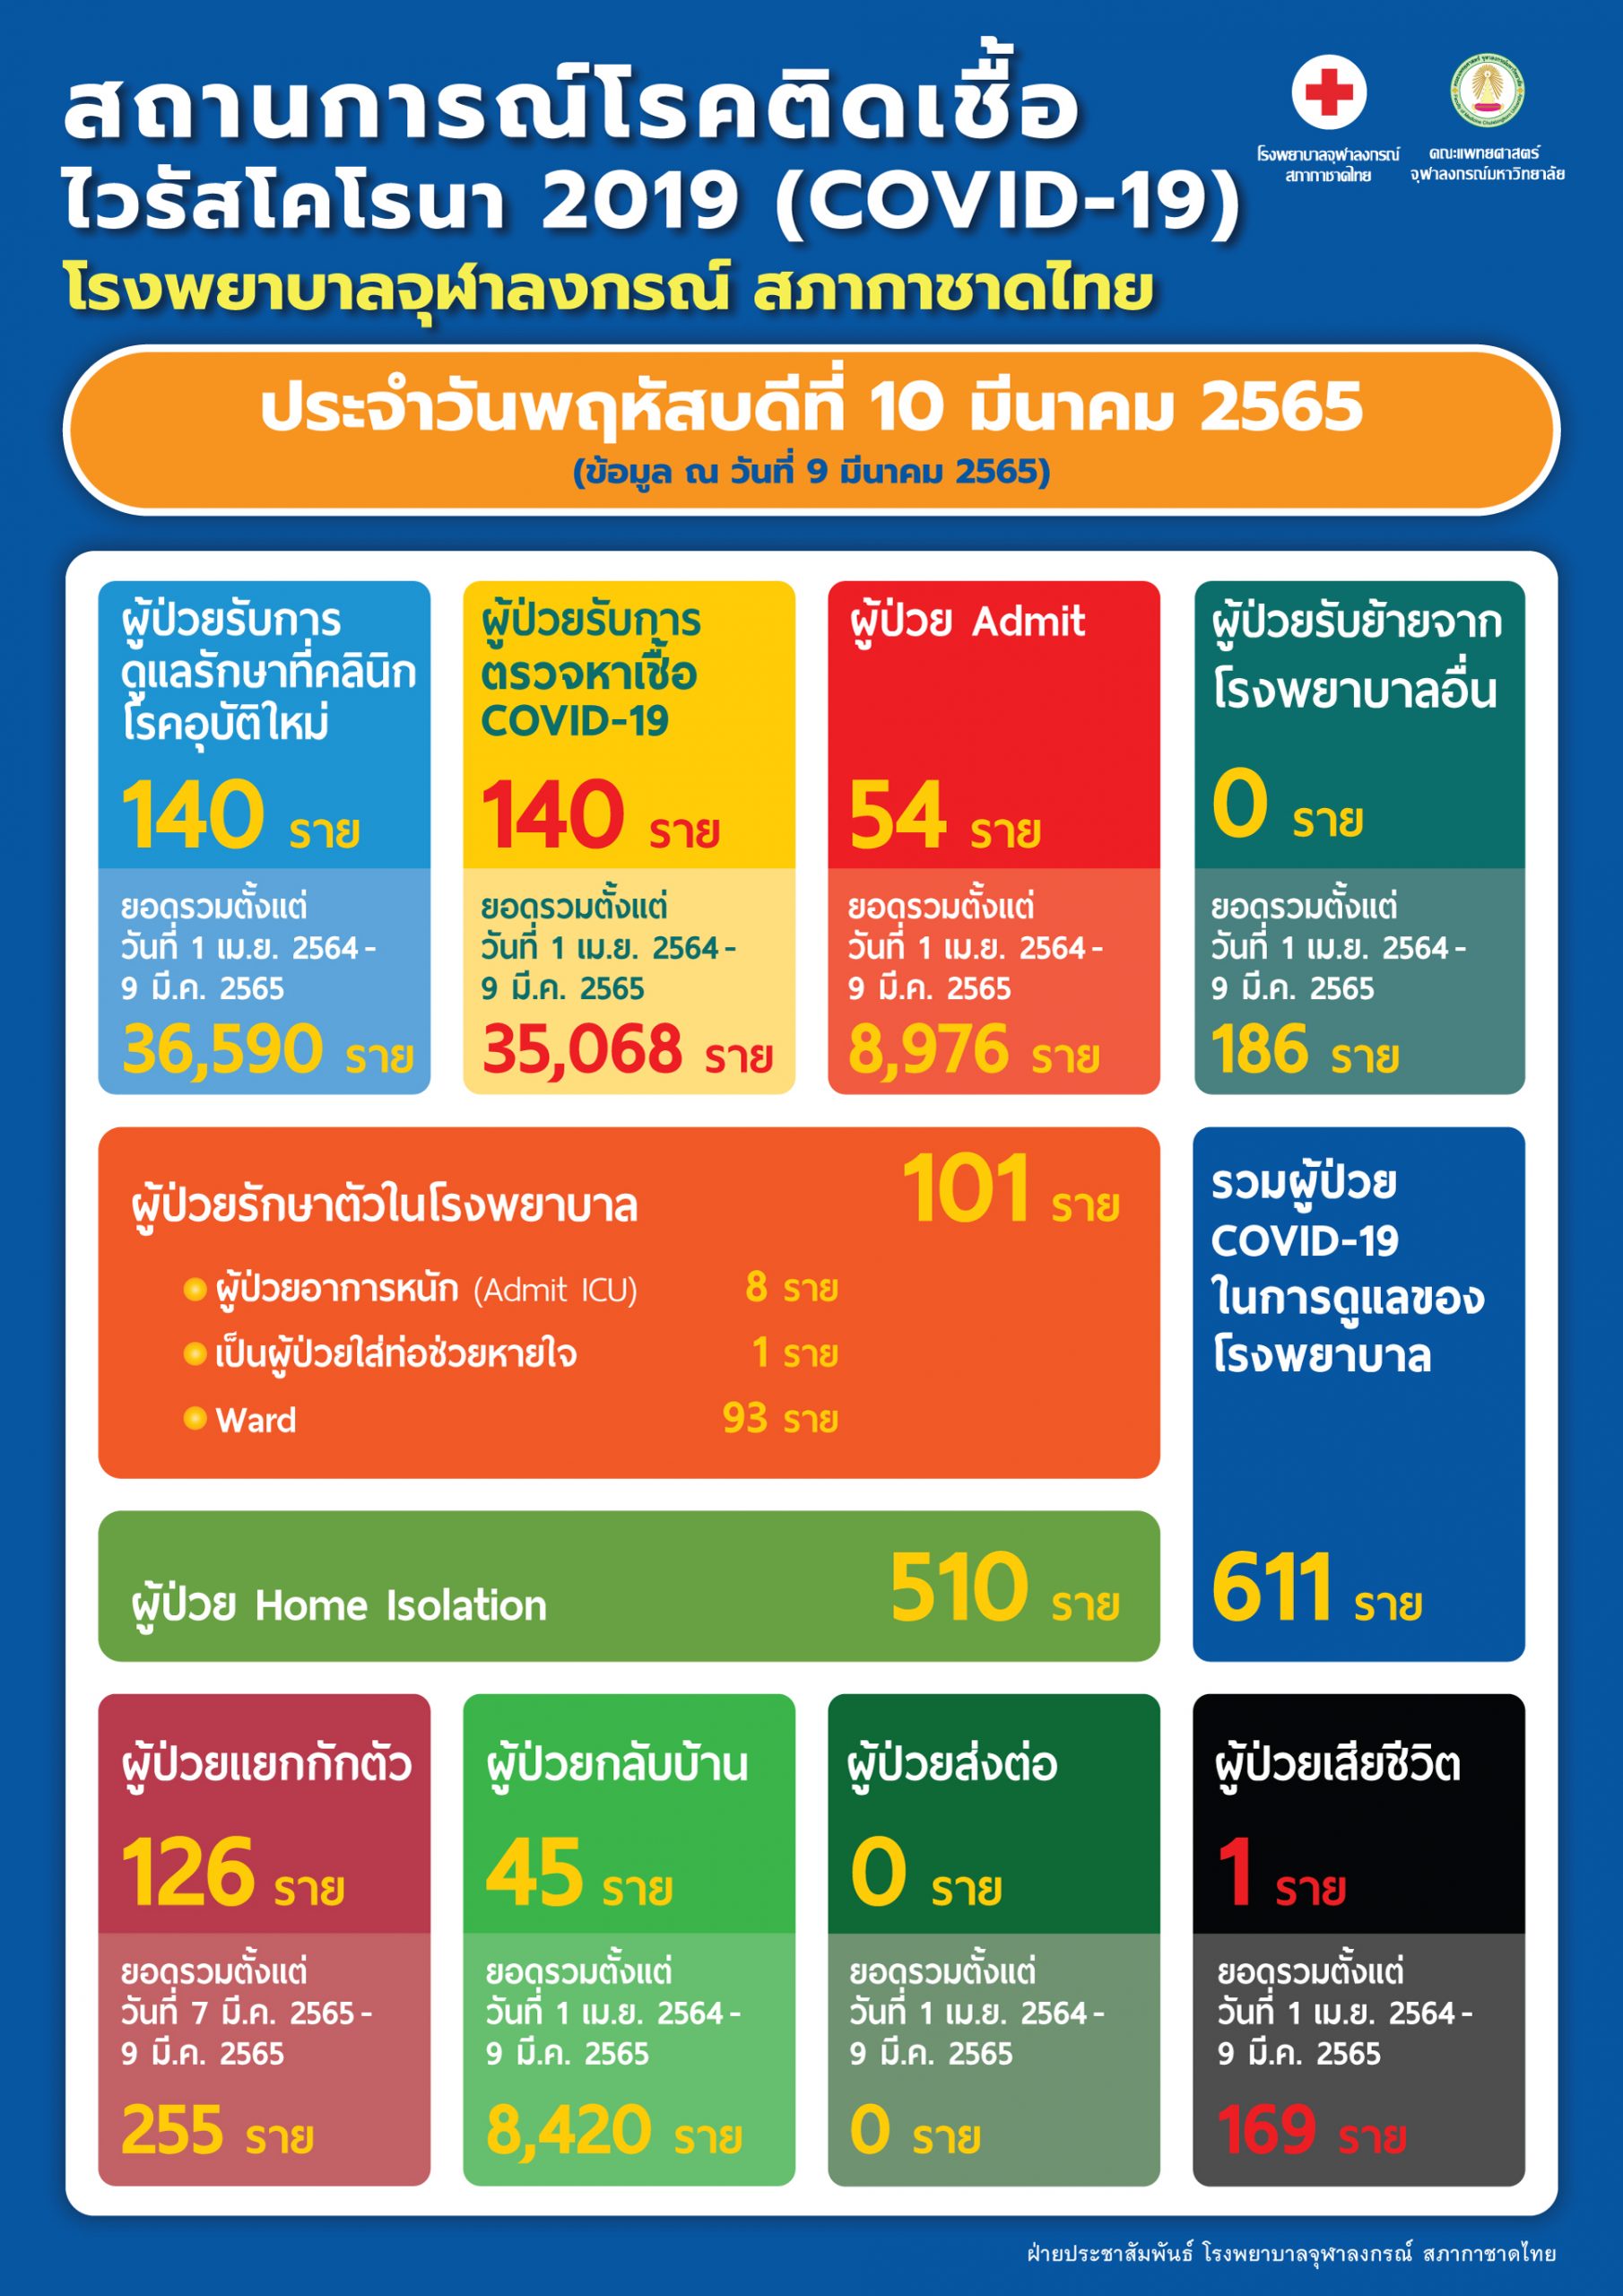 สถานการณ์โรคติดเชื้อไวรัสโคโรนา 2019 (COVID-19) โรงพยาบาลจุฬาลงกรณ์ สภากาชาดไทย ประจำวันพฤหัสบดีที่ 10 มีนาคม 2565